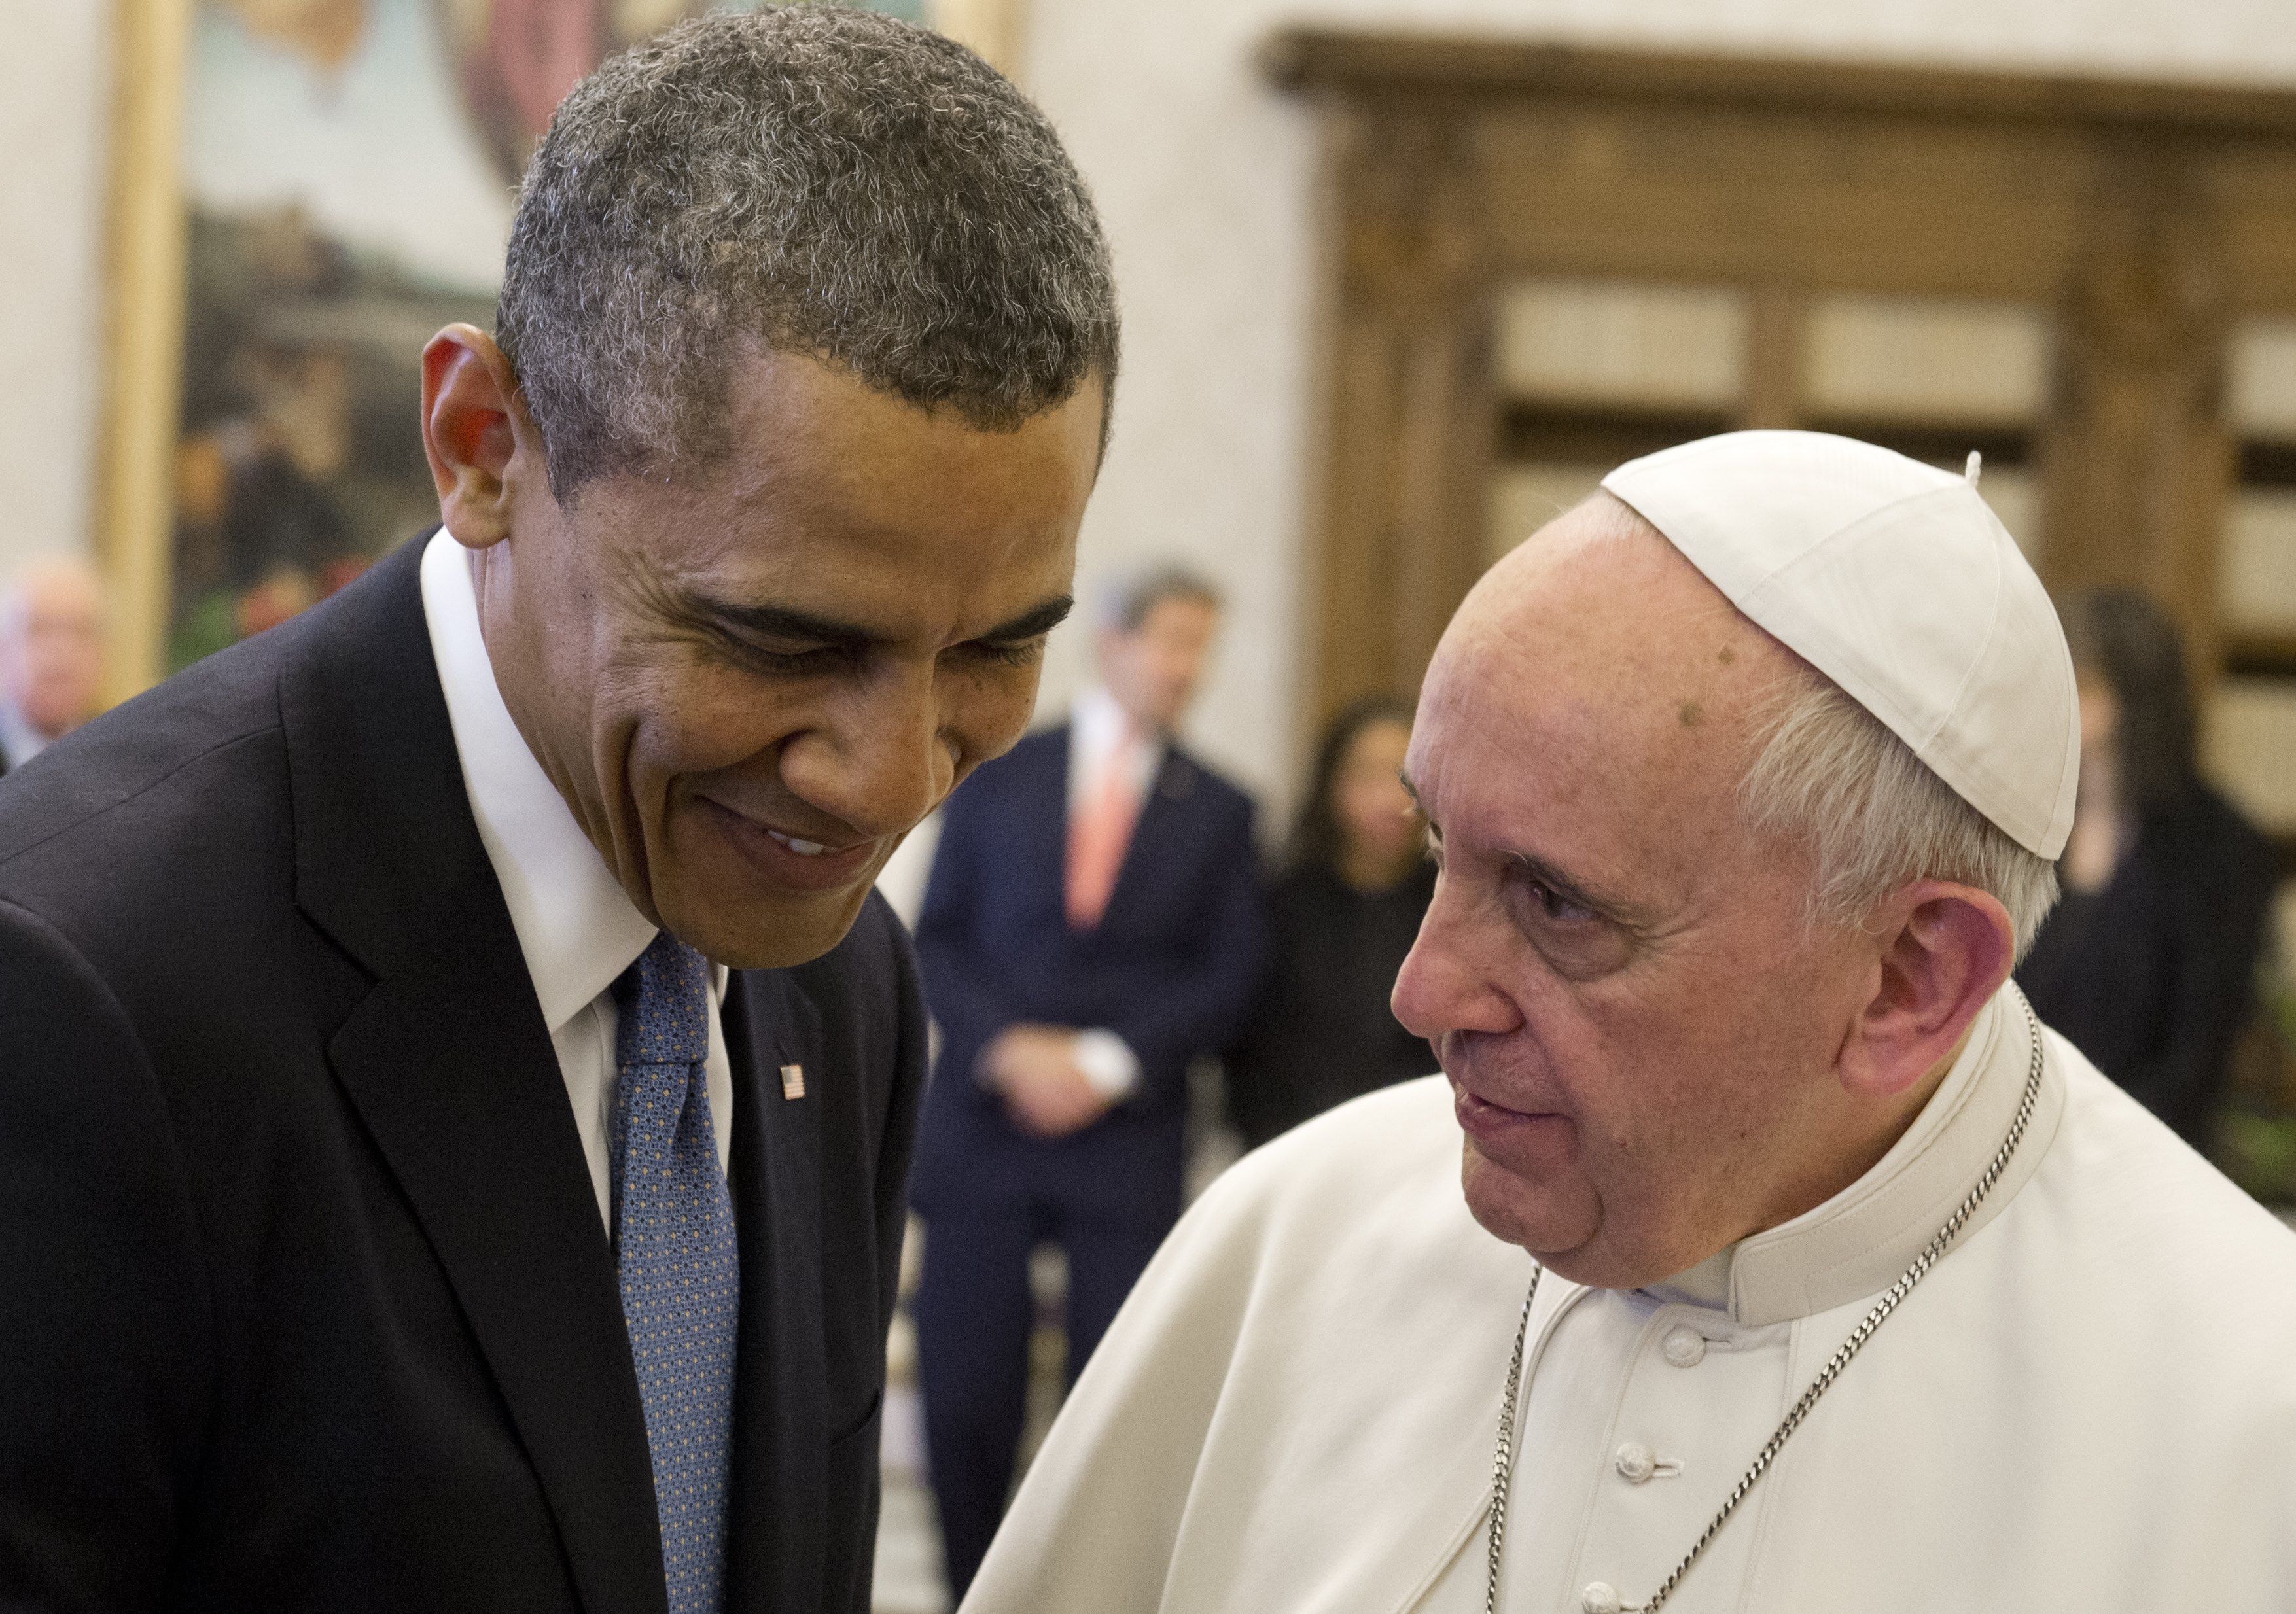 Obama recevra le pape François le 23 septembre à la Maison-Blanche B7ba527c-5951-4759-9878-c1a0465fe6ce_JDX-NO-RATIO_WEB